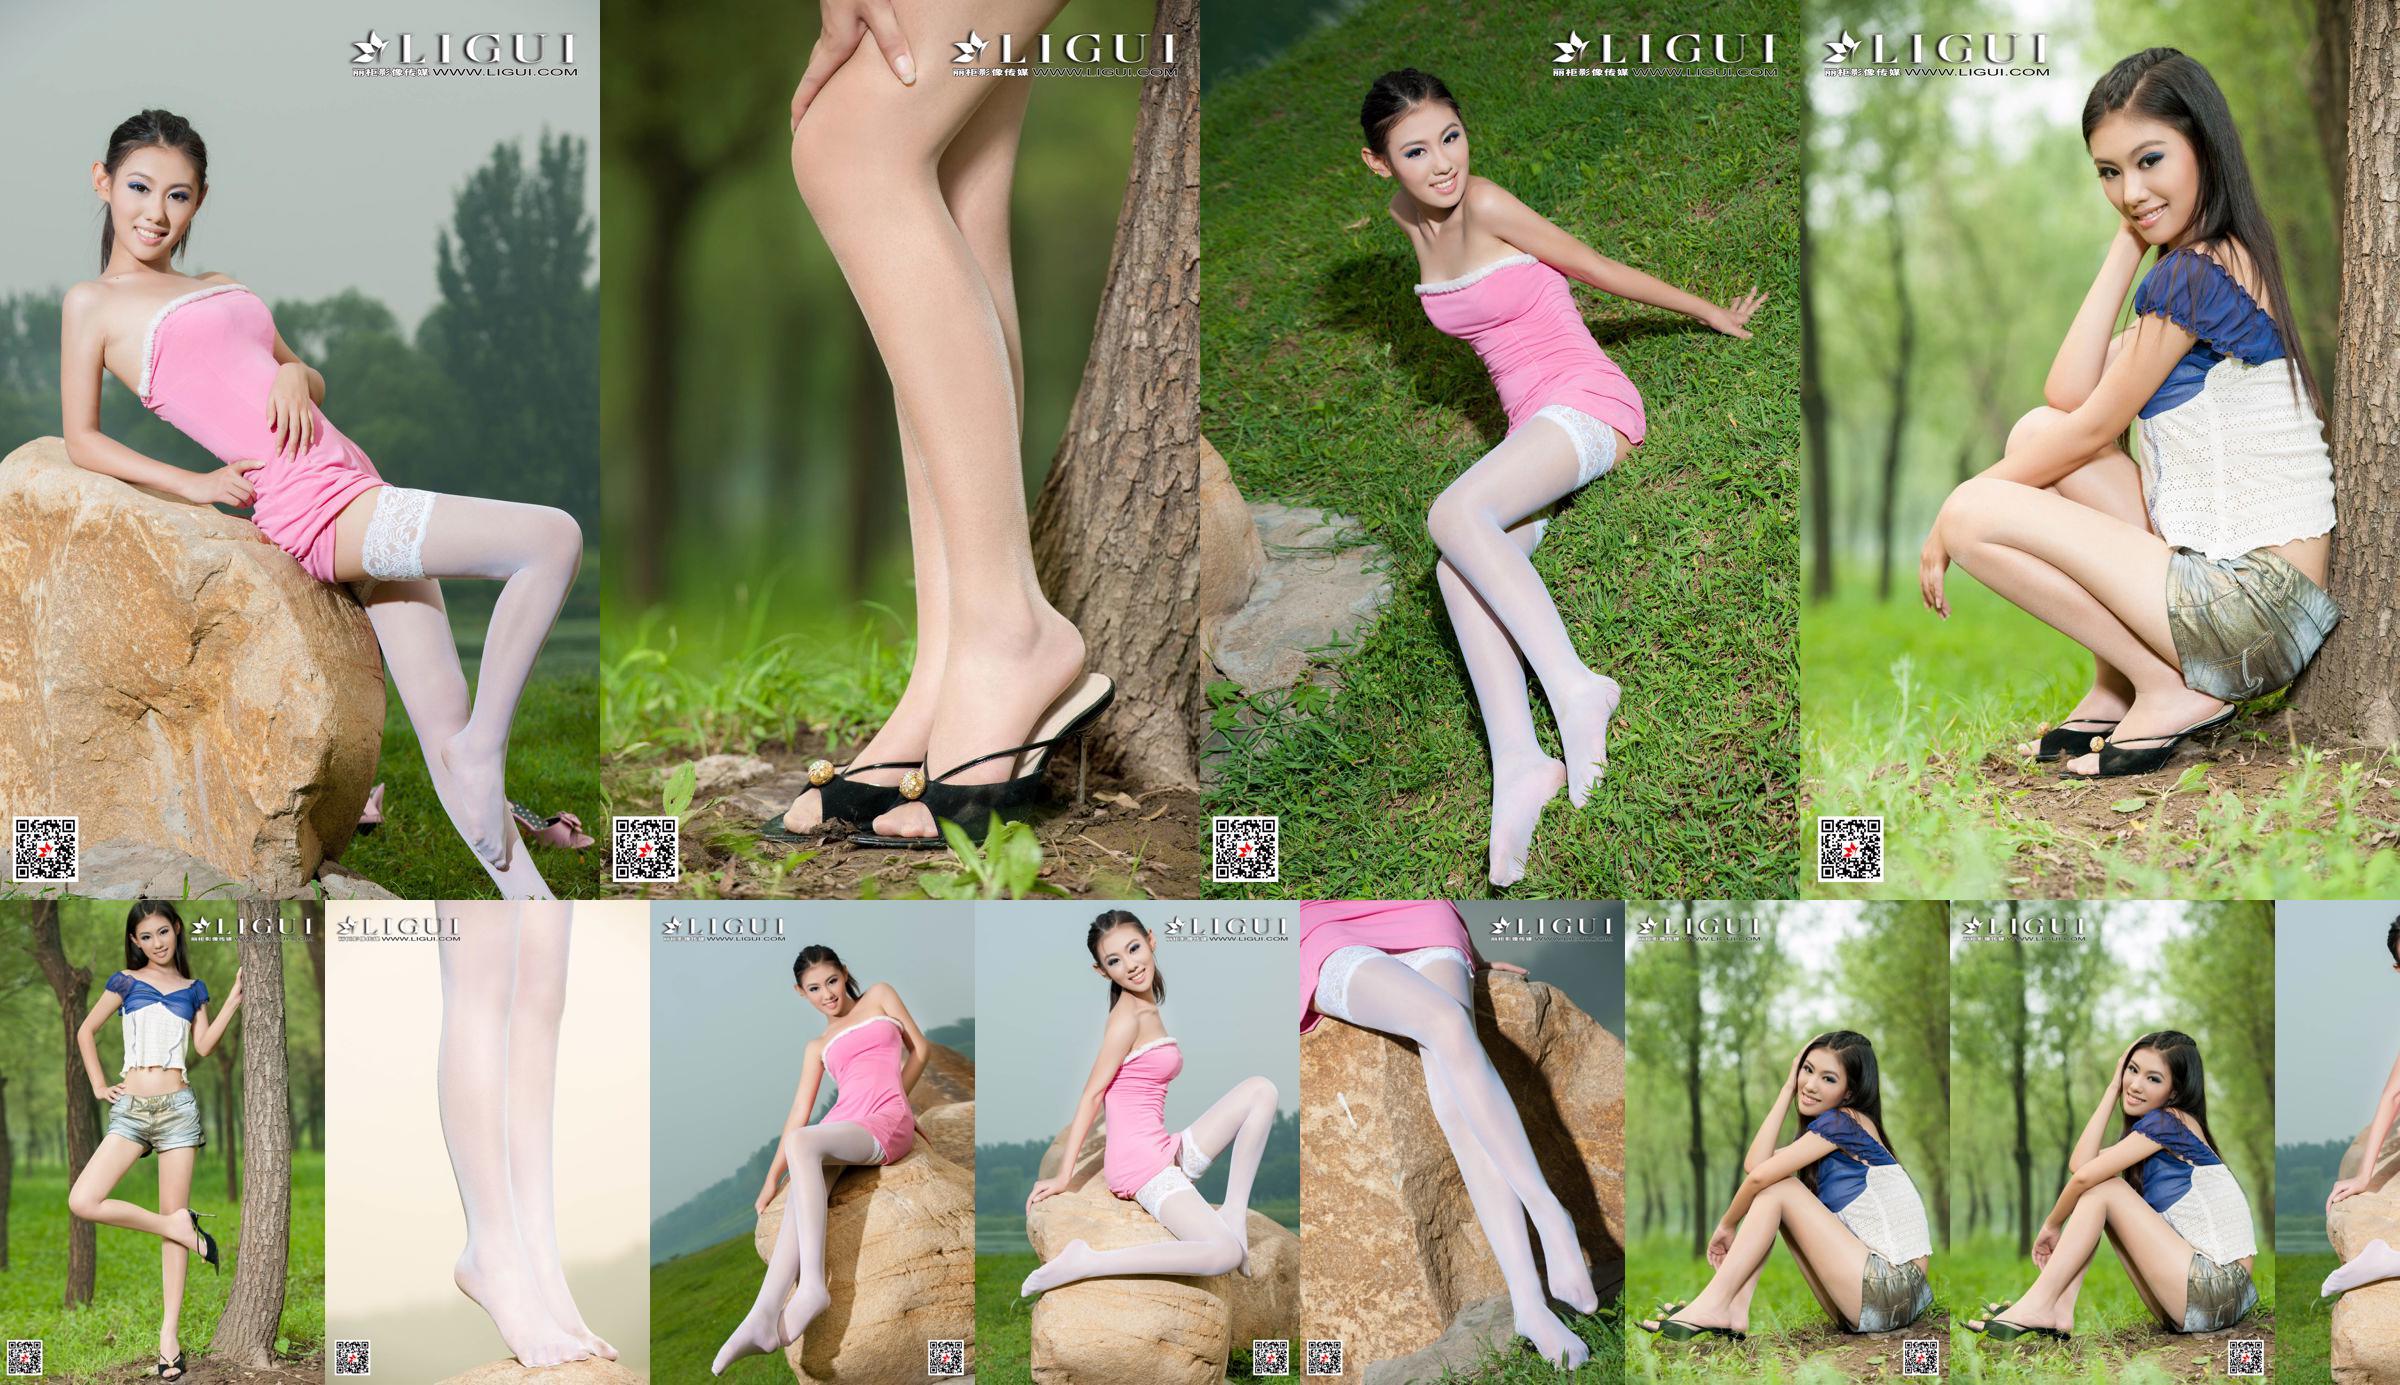 [丽 柜 Ligui] Model Wei Ling "Long Leg Girl" Schöne Beine No.d020e7 Seite 1